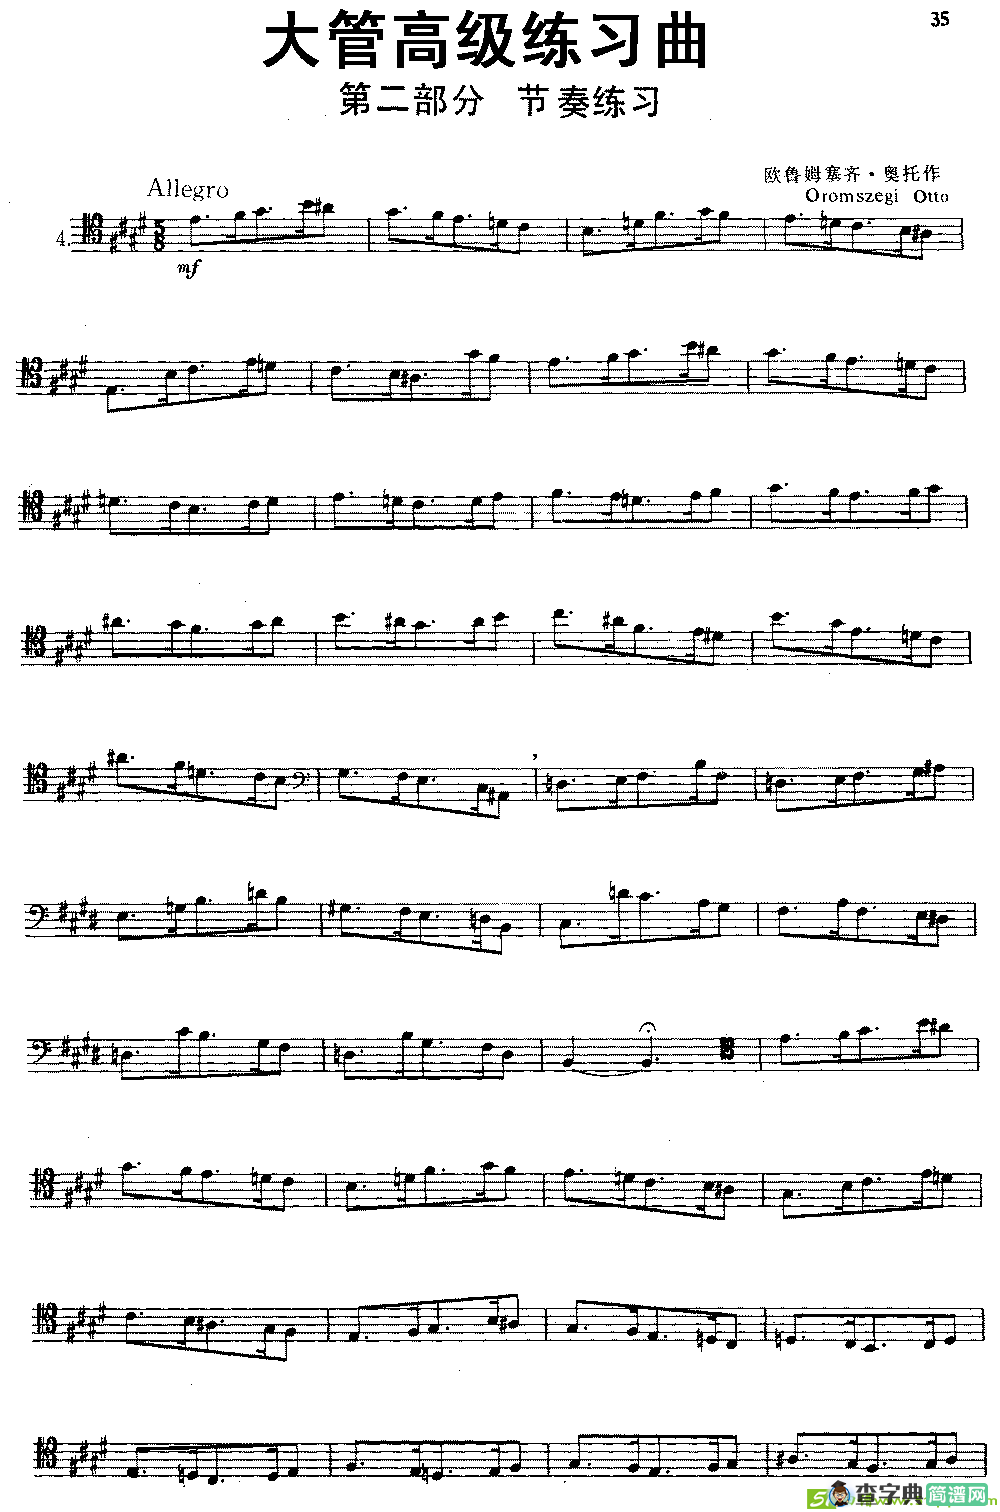 大管高级练习曲 第二部分 节奏练习铜管谱(欧鲁姆塞齐·奥托作曲)